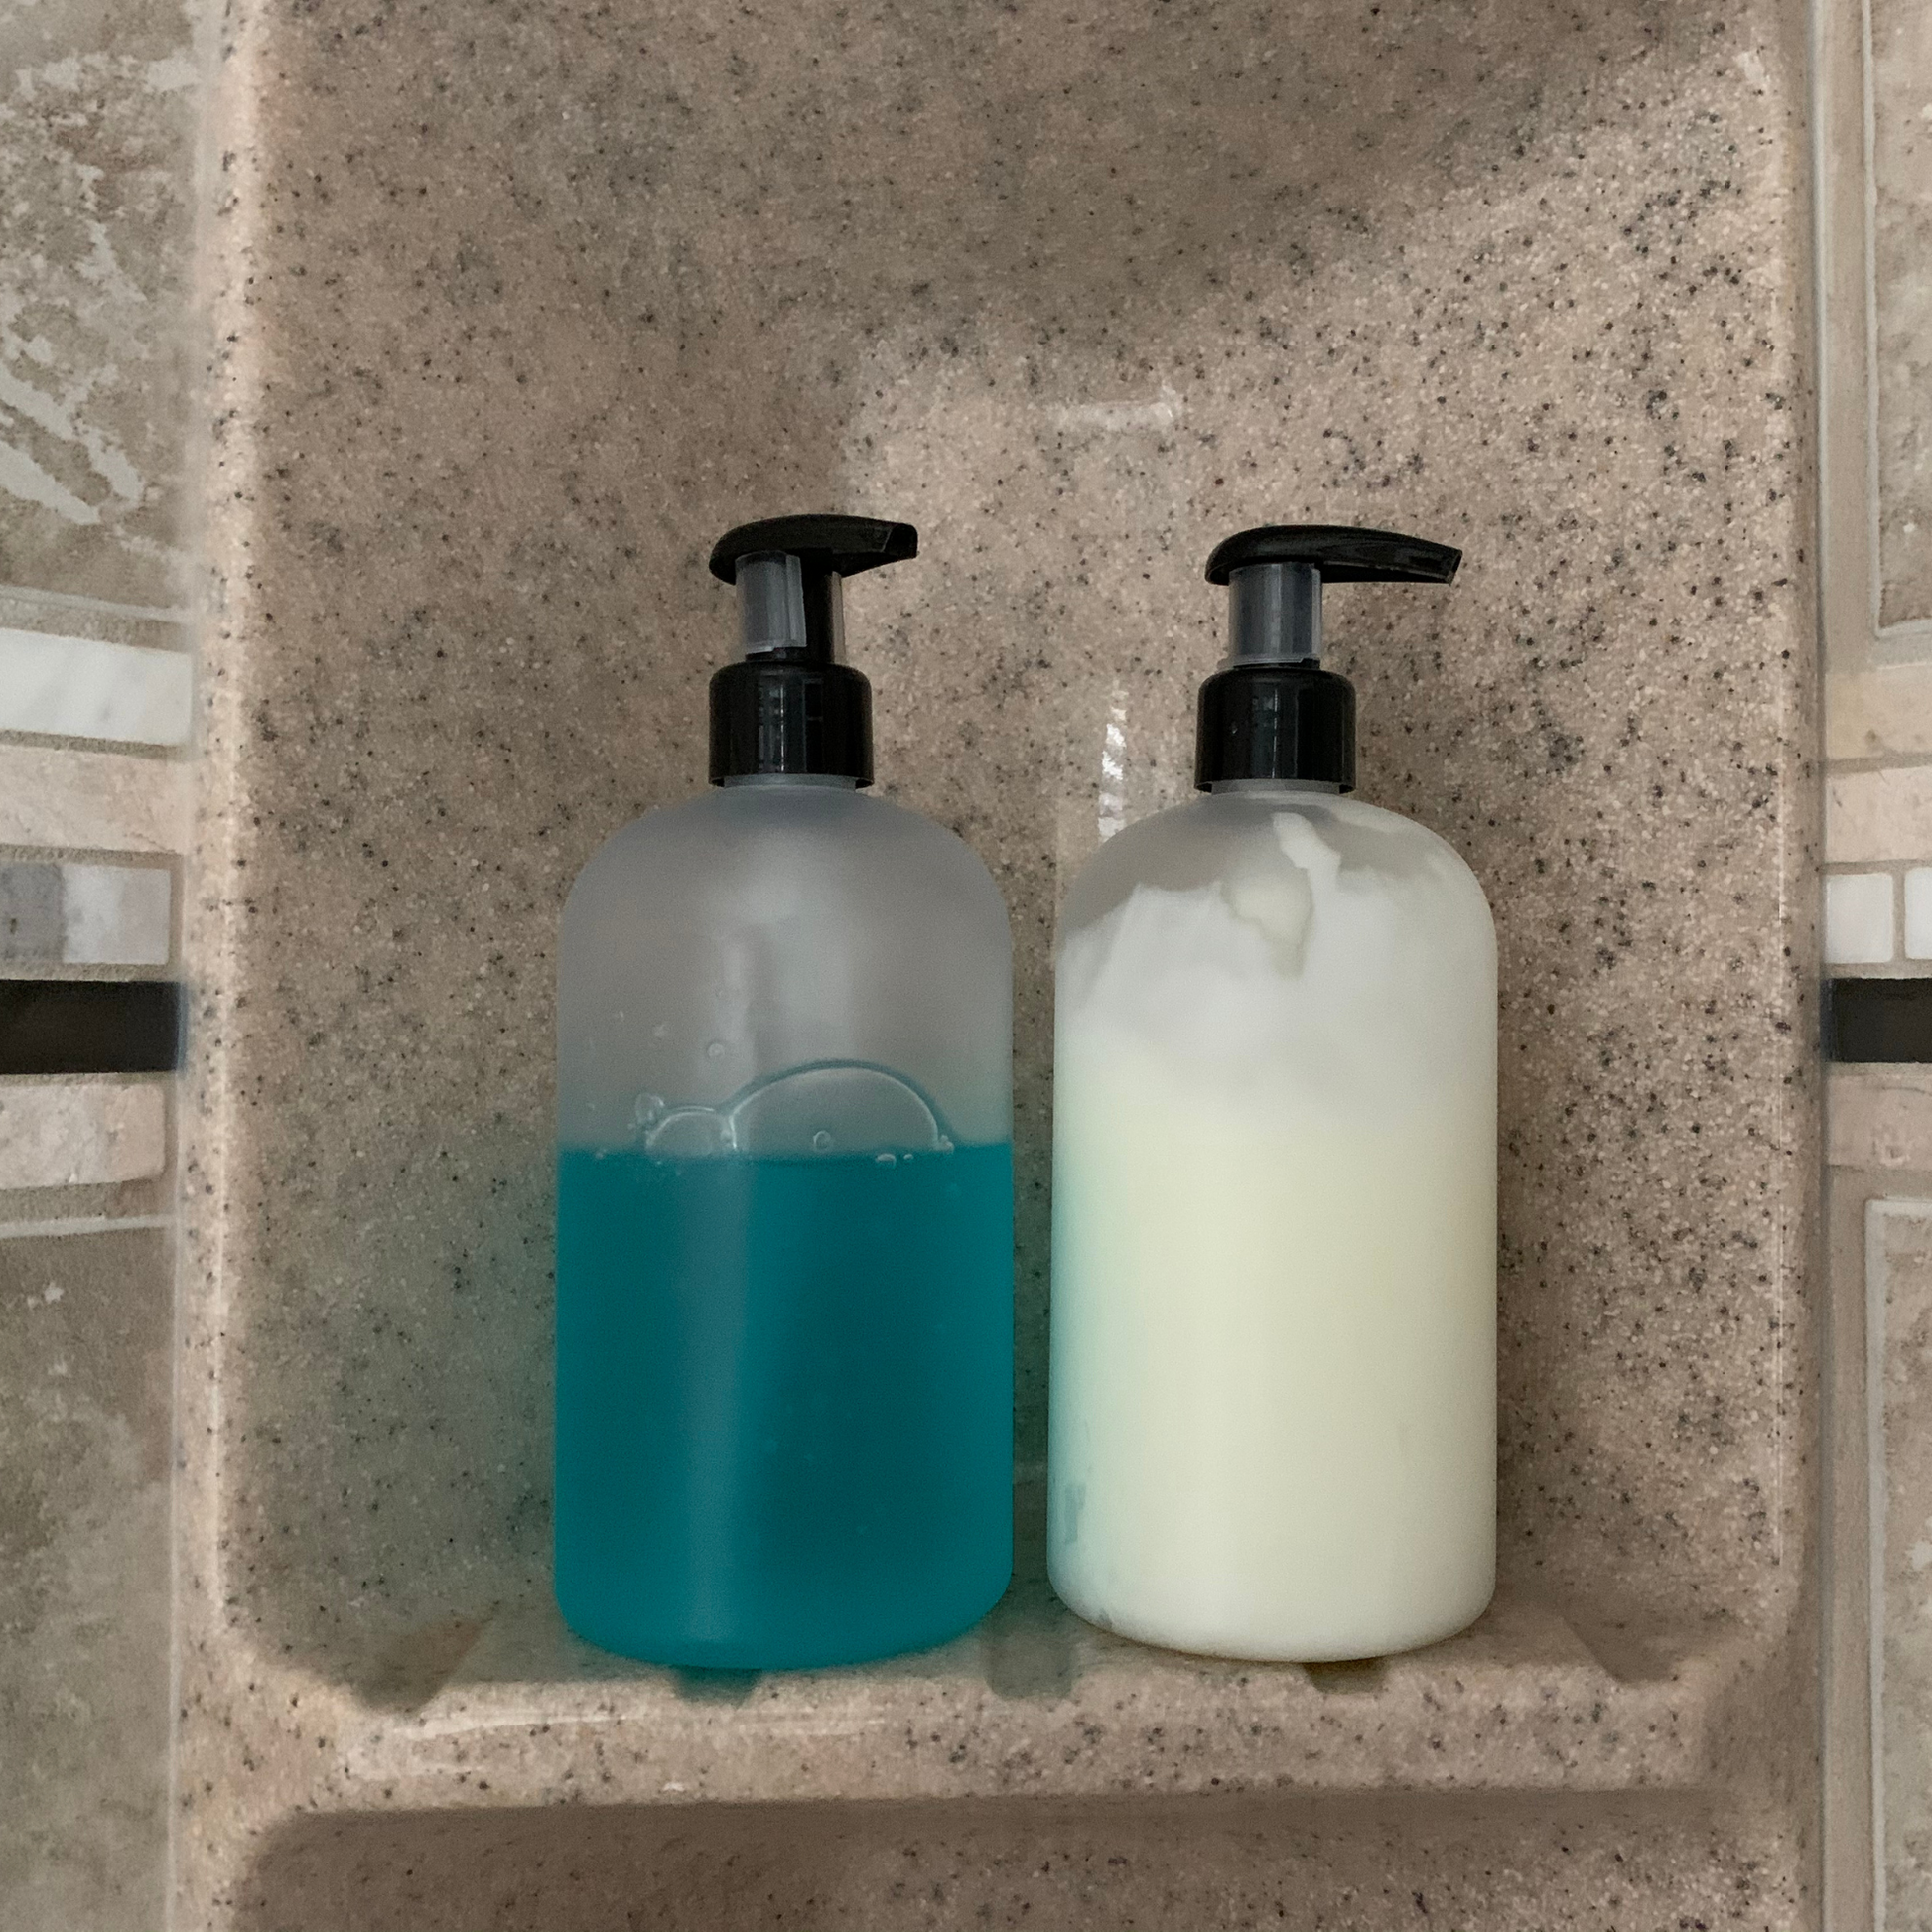 Reusable Glass Dish Soap Dispenser | Square Base